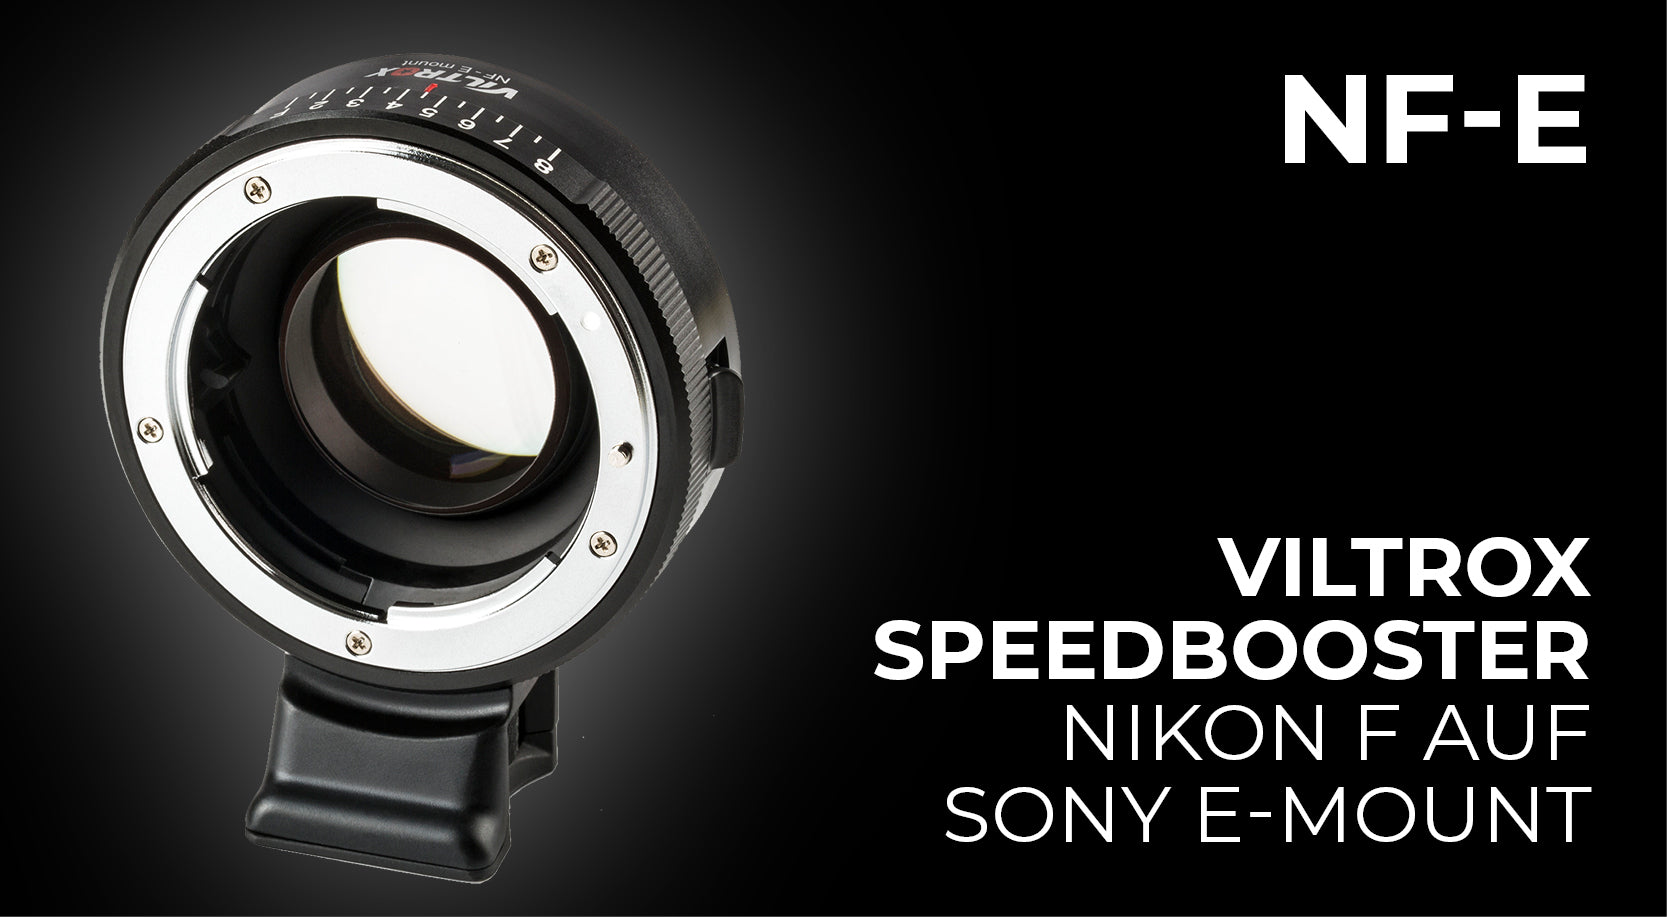 Viltrox NF-E Speedbooster zur Verwendung von Nikon F-Objektiven an Sony E Kameras